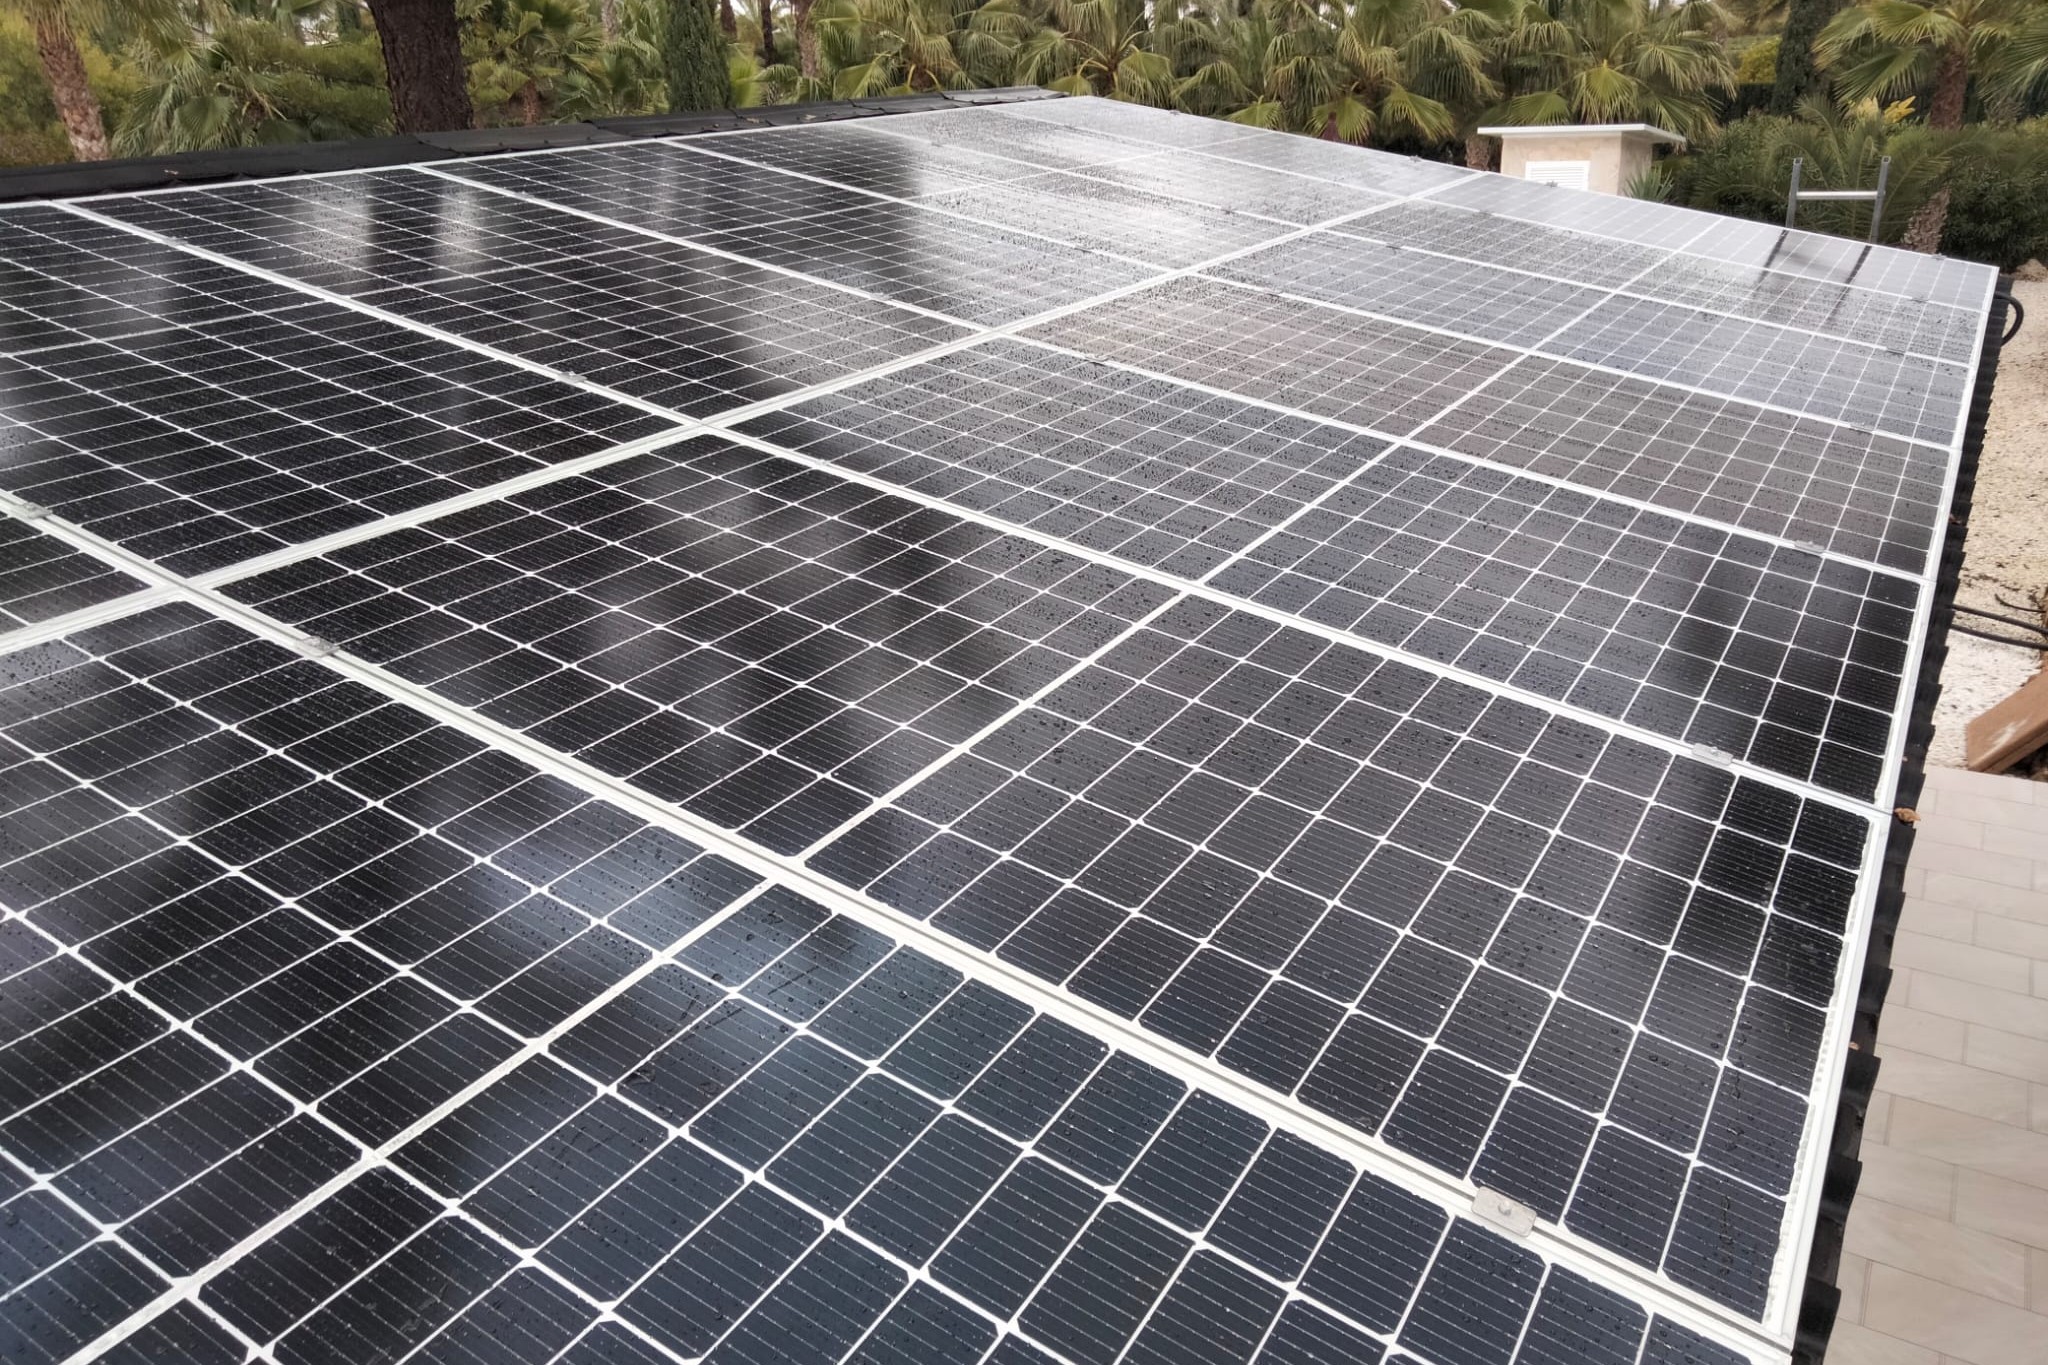 14X 455 wp Solar Panels, Daya Vieja, Alicante (Hybrid system)